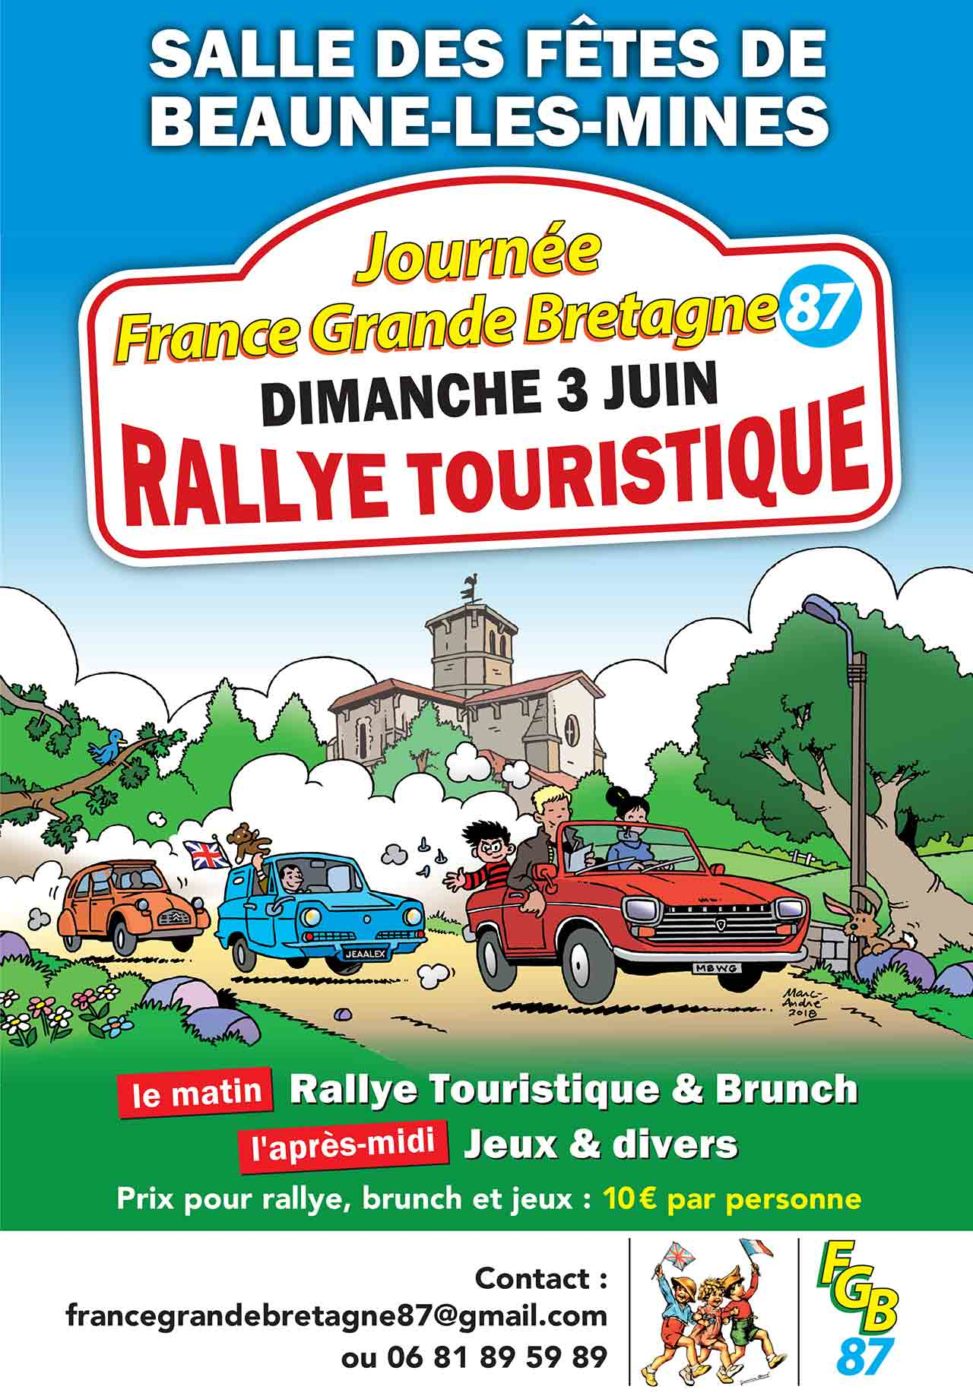 2018-Affiche-et-flyer-pour-le-rallye-touristique-de-Beaune-les-Mines-Association-France-Grande-Bretagne Limoges